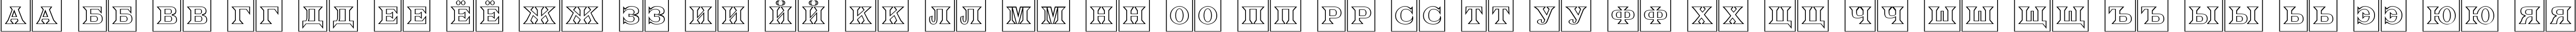 Пример написания русского алфавита шрифтом a_LatinoTitulCmOtl